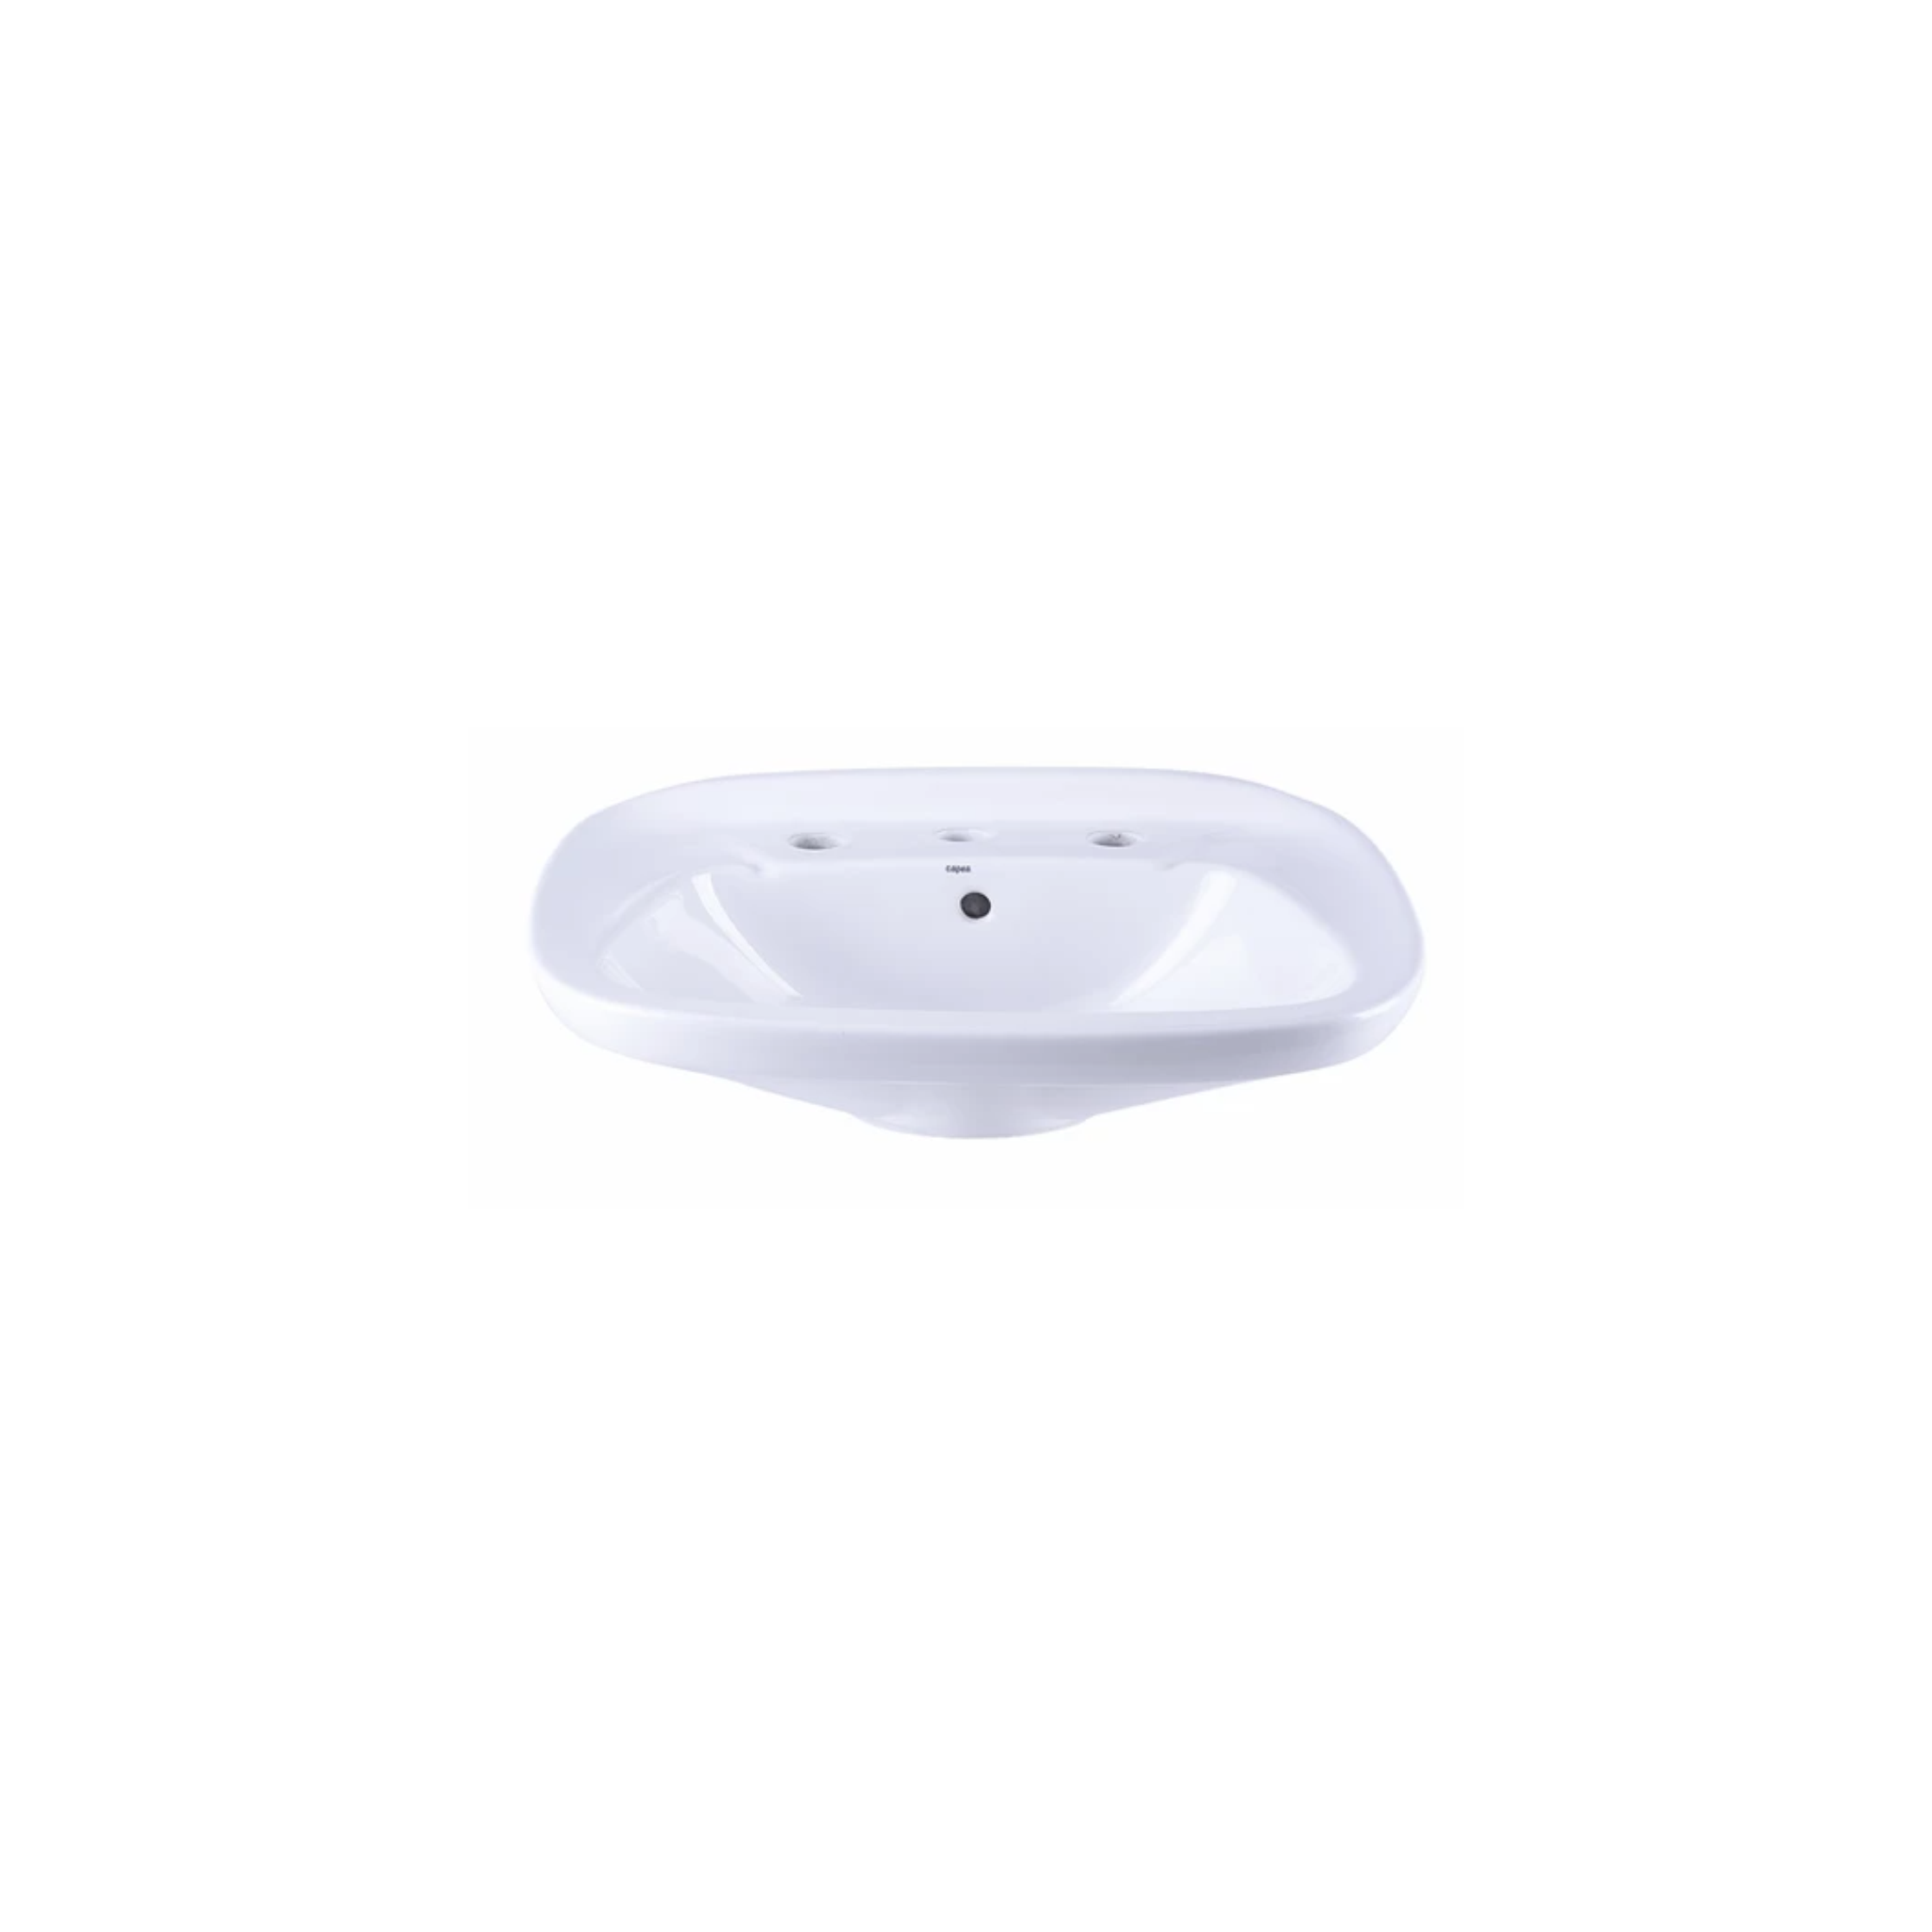 Lavatorio porcelana Capea italiana 3 agujeros blanco brillante 205mm x 410mm x 540mm